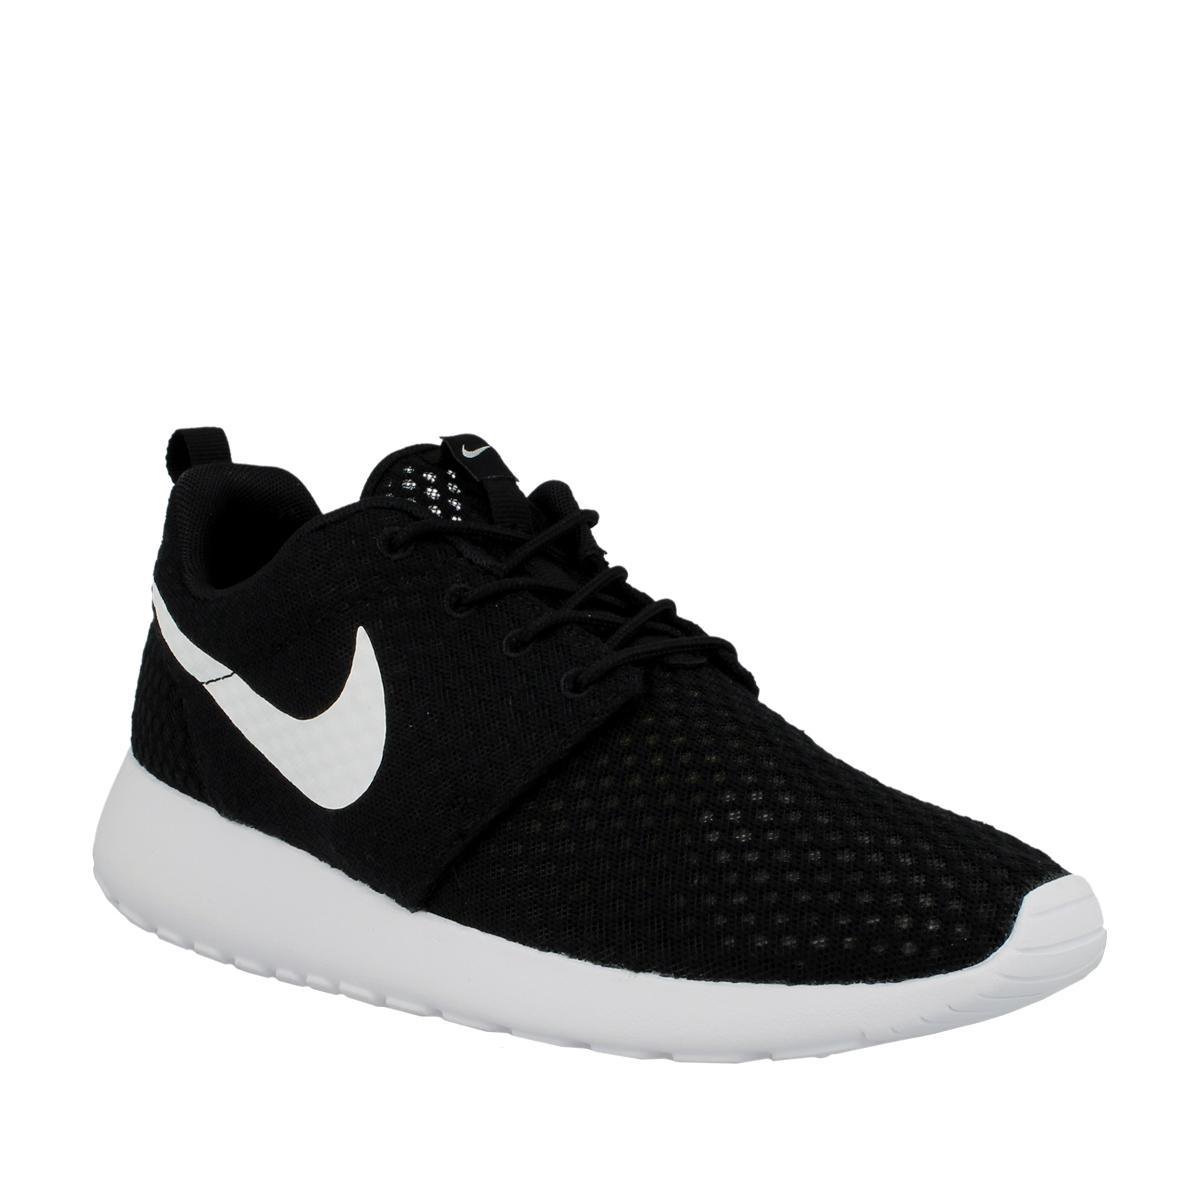 Eigenlijk Trek wenselijk Nike Roshe Run Breeze Black/White 718552 011 Zwart;Wit maat 40 | bol.com